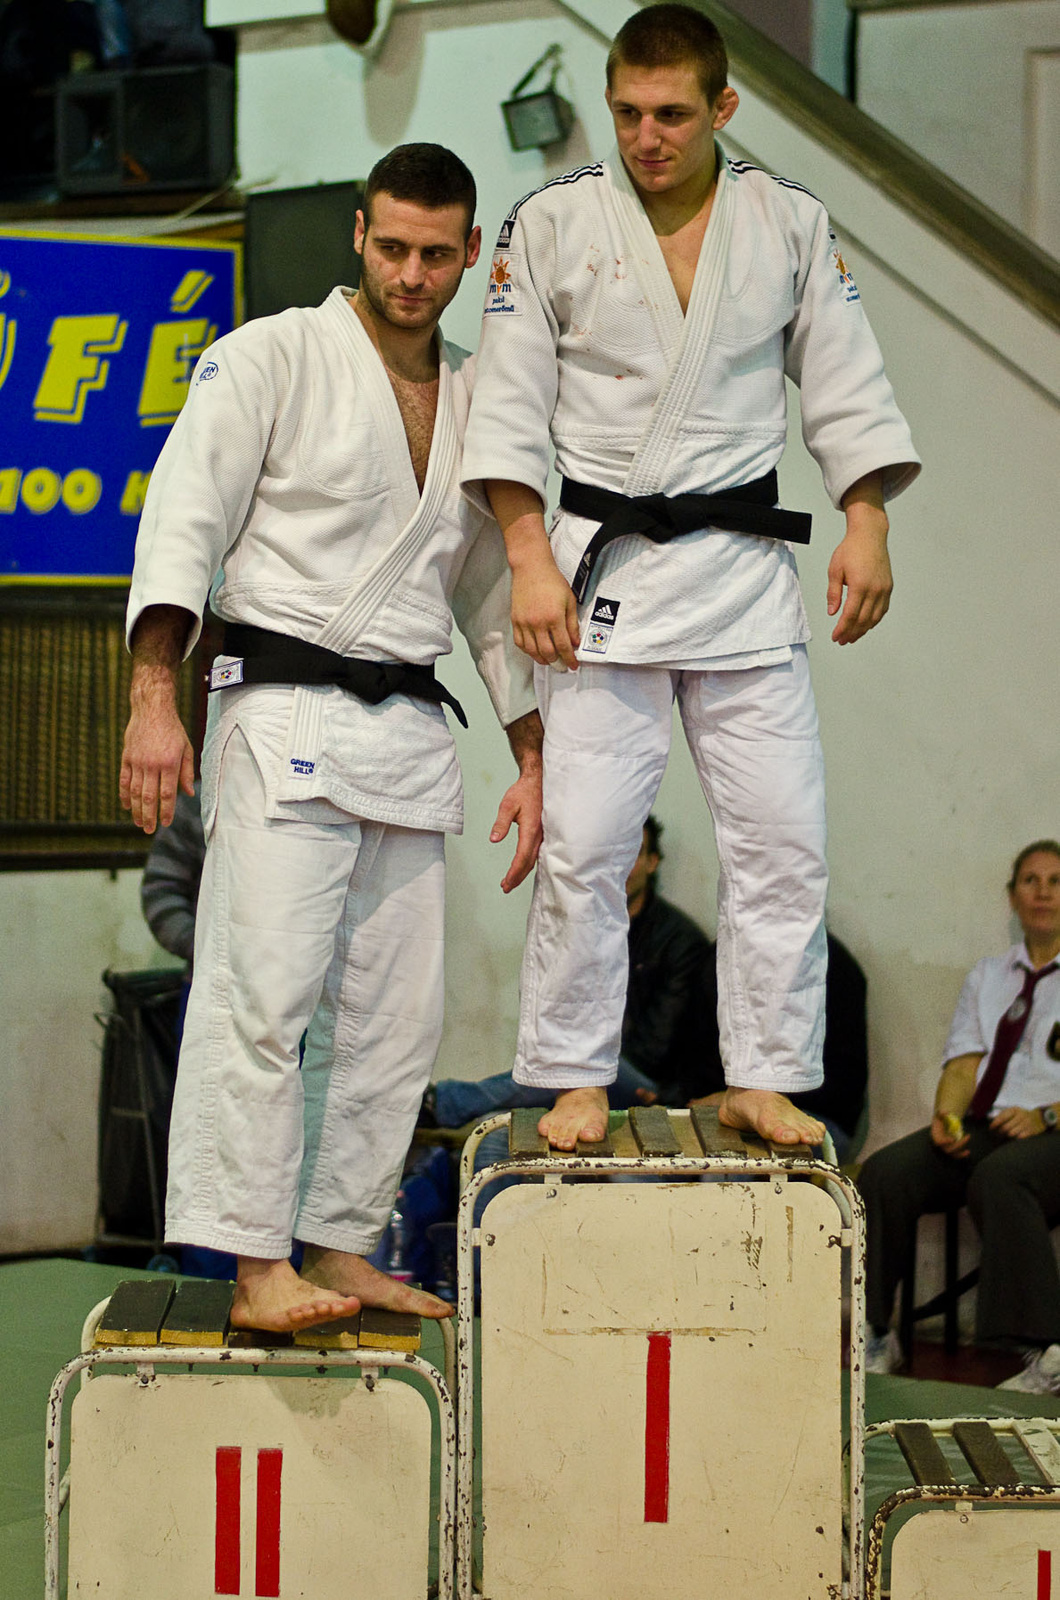 Judo MEFOB 20121125 207